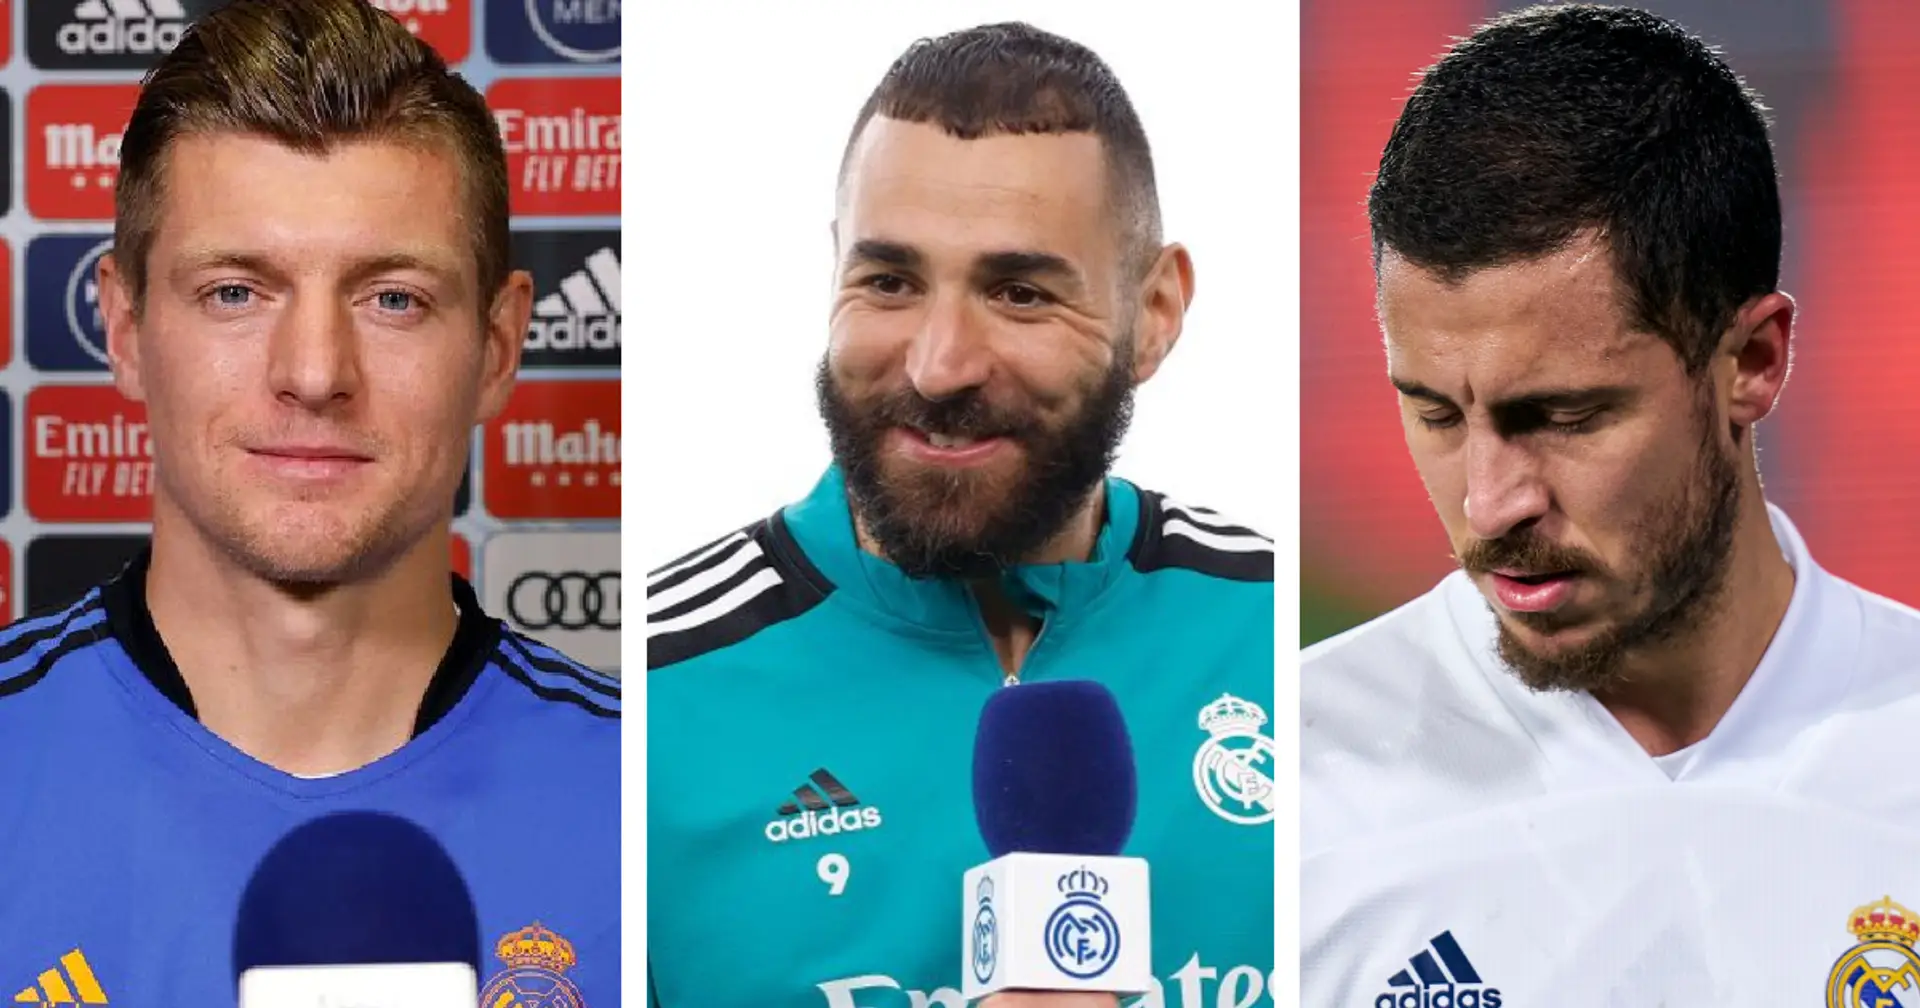 Los 10 jugadores con mayores ingresos del Real Madrid en este momento: los primeros 4 jugadores ganan 100 millones de euros por temporada